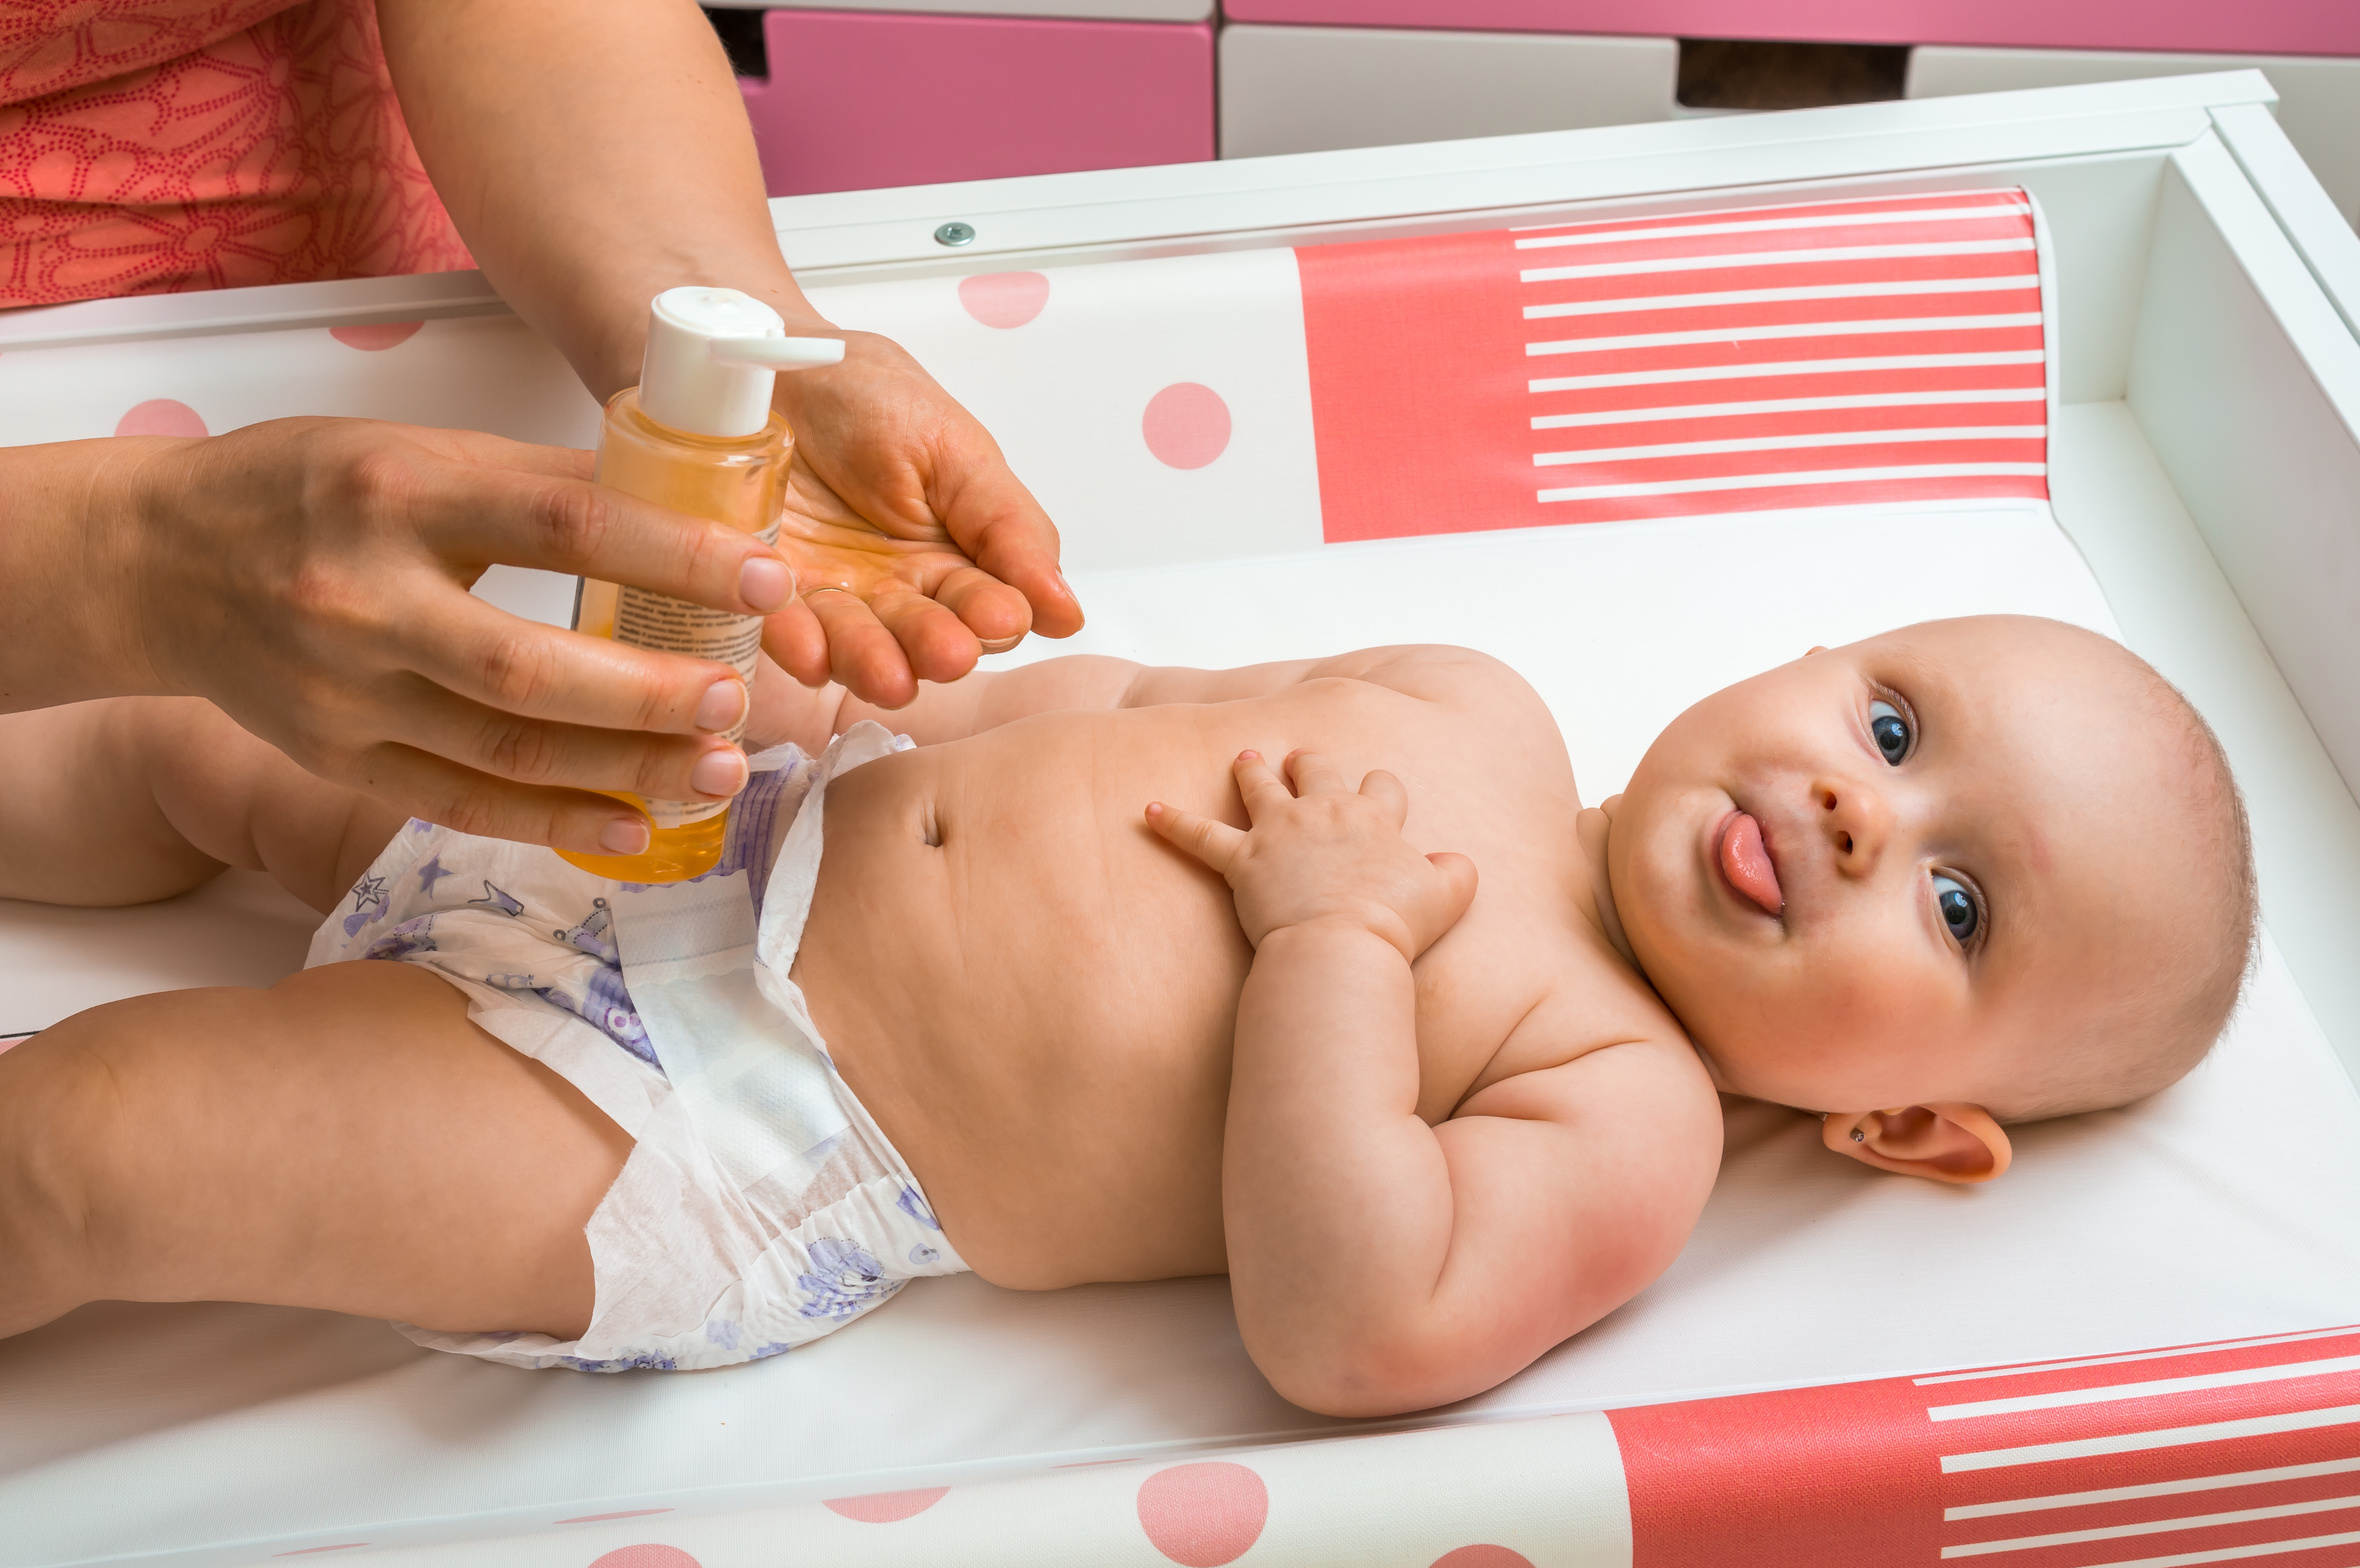 Ciemieniucha a alergia - sprawdzanie skóry dziecka